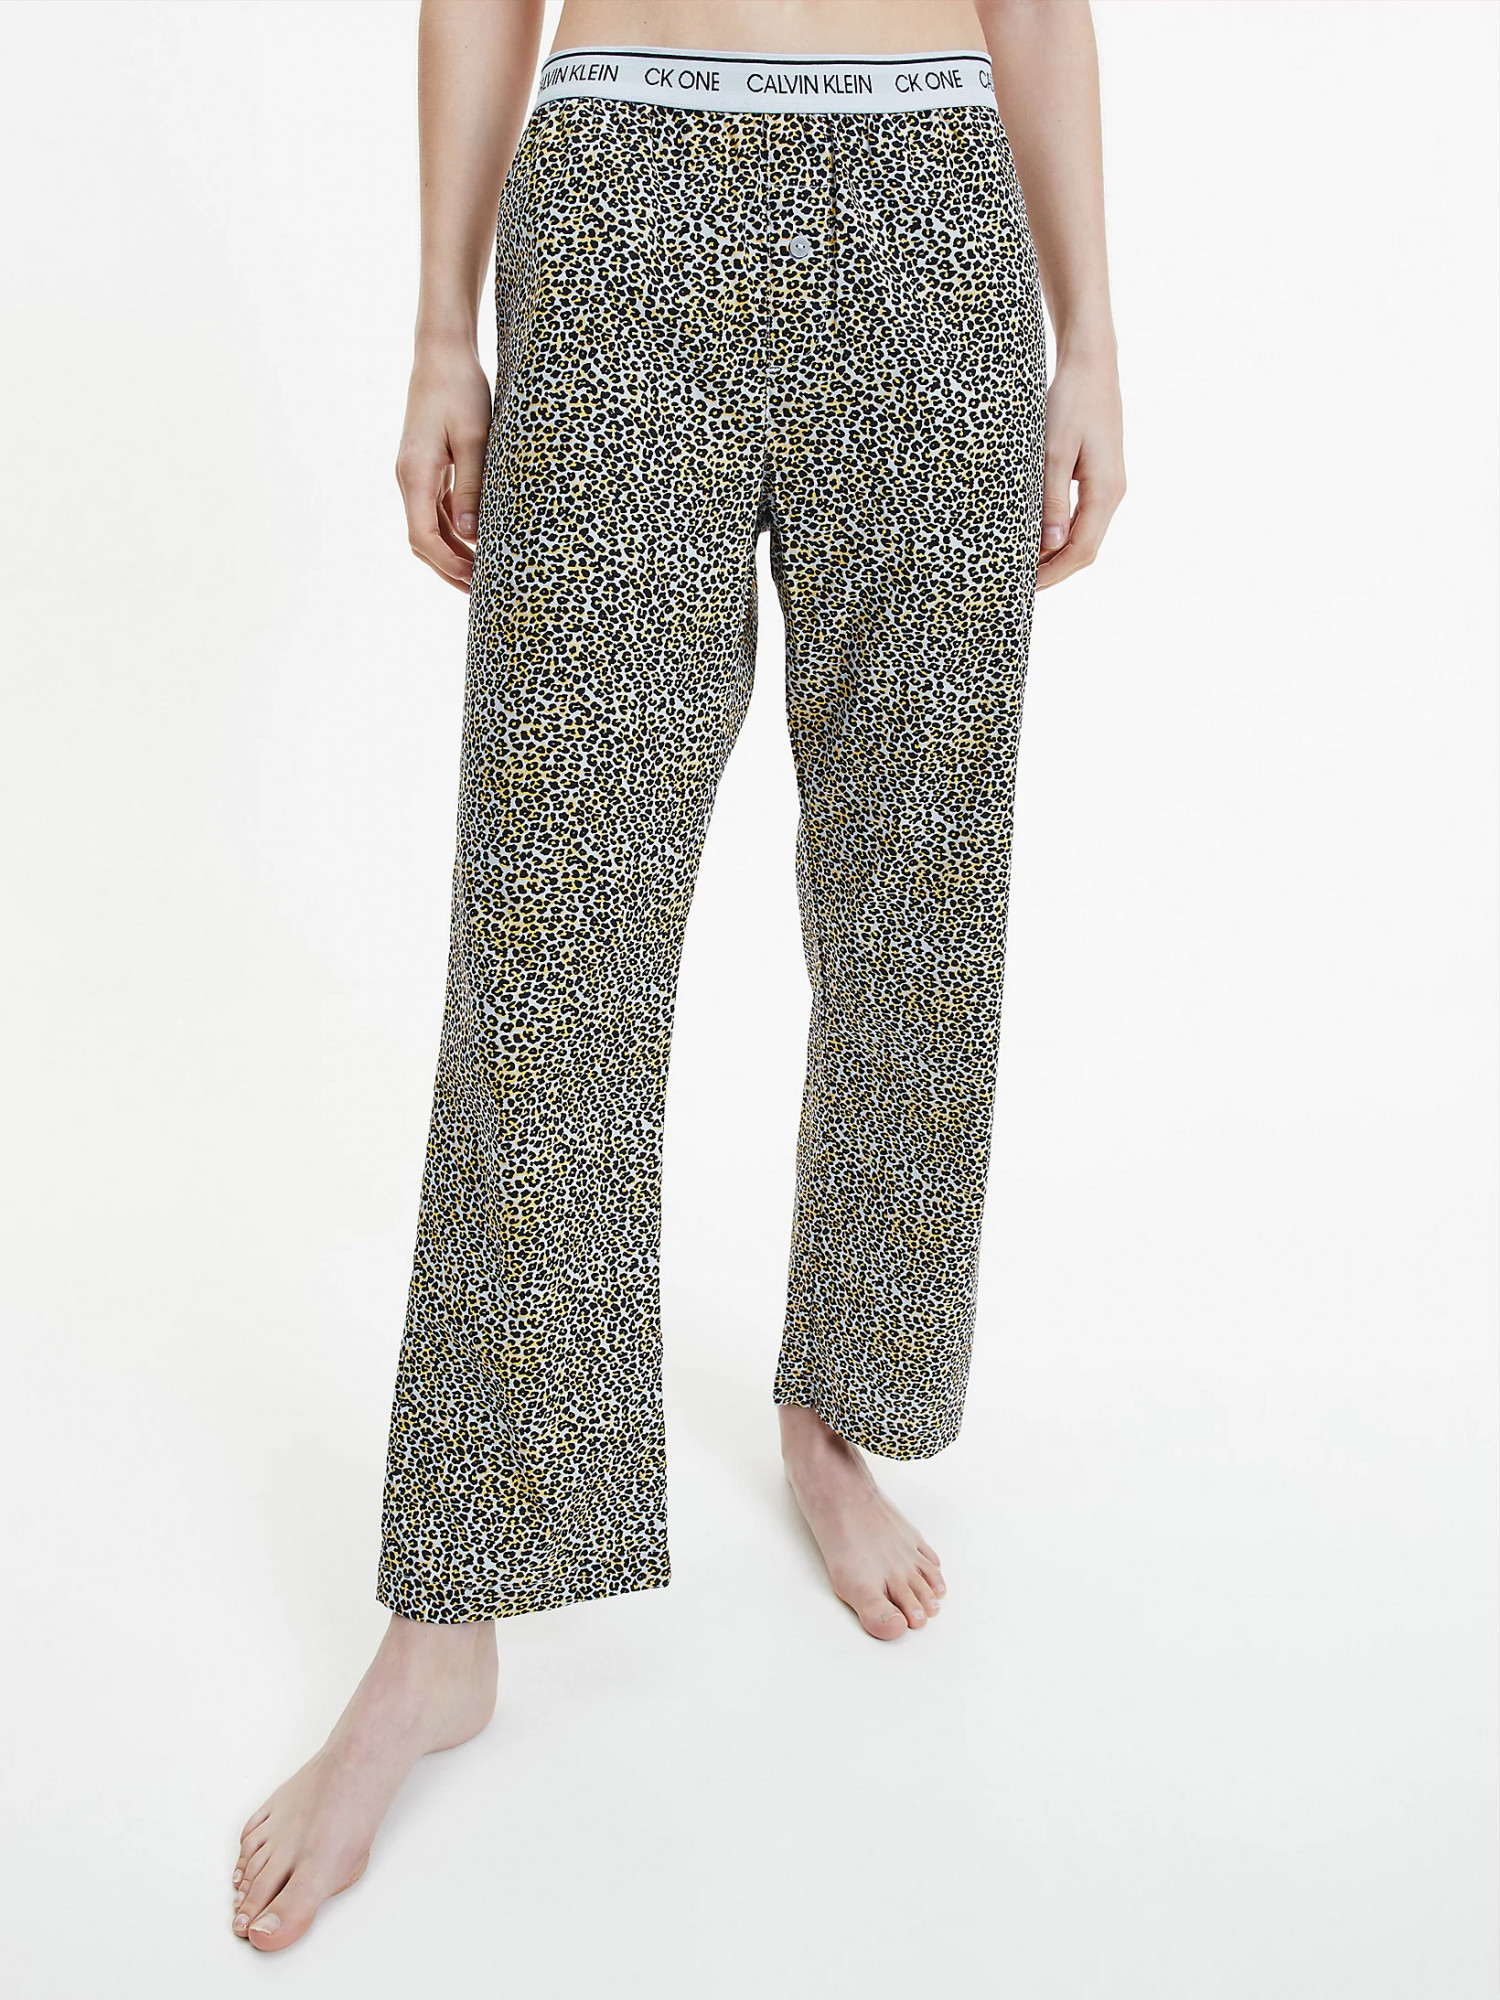 Dámské pyžamové kalhoty QS6433E - V4L Fialová se zvířecím vzorem - Calvin Klein M fialová vzor